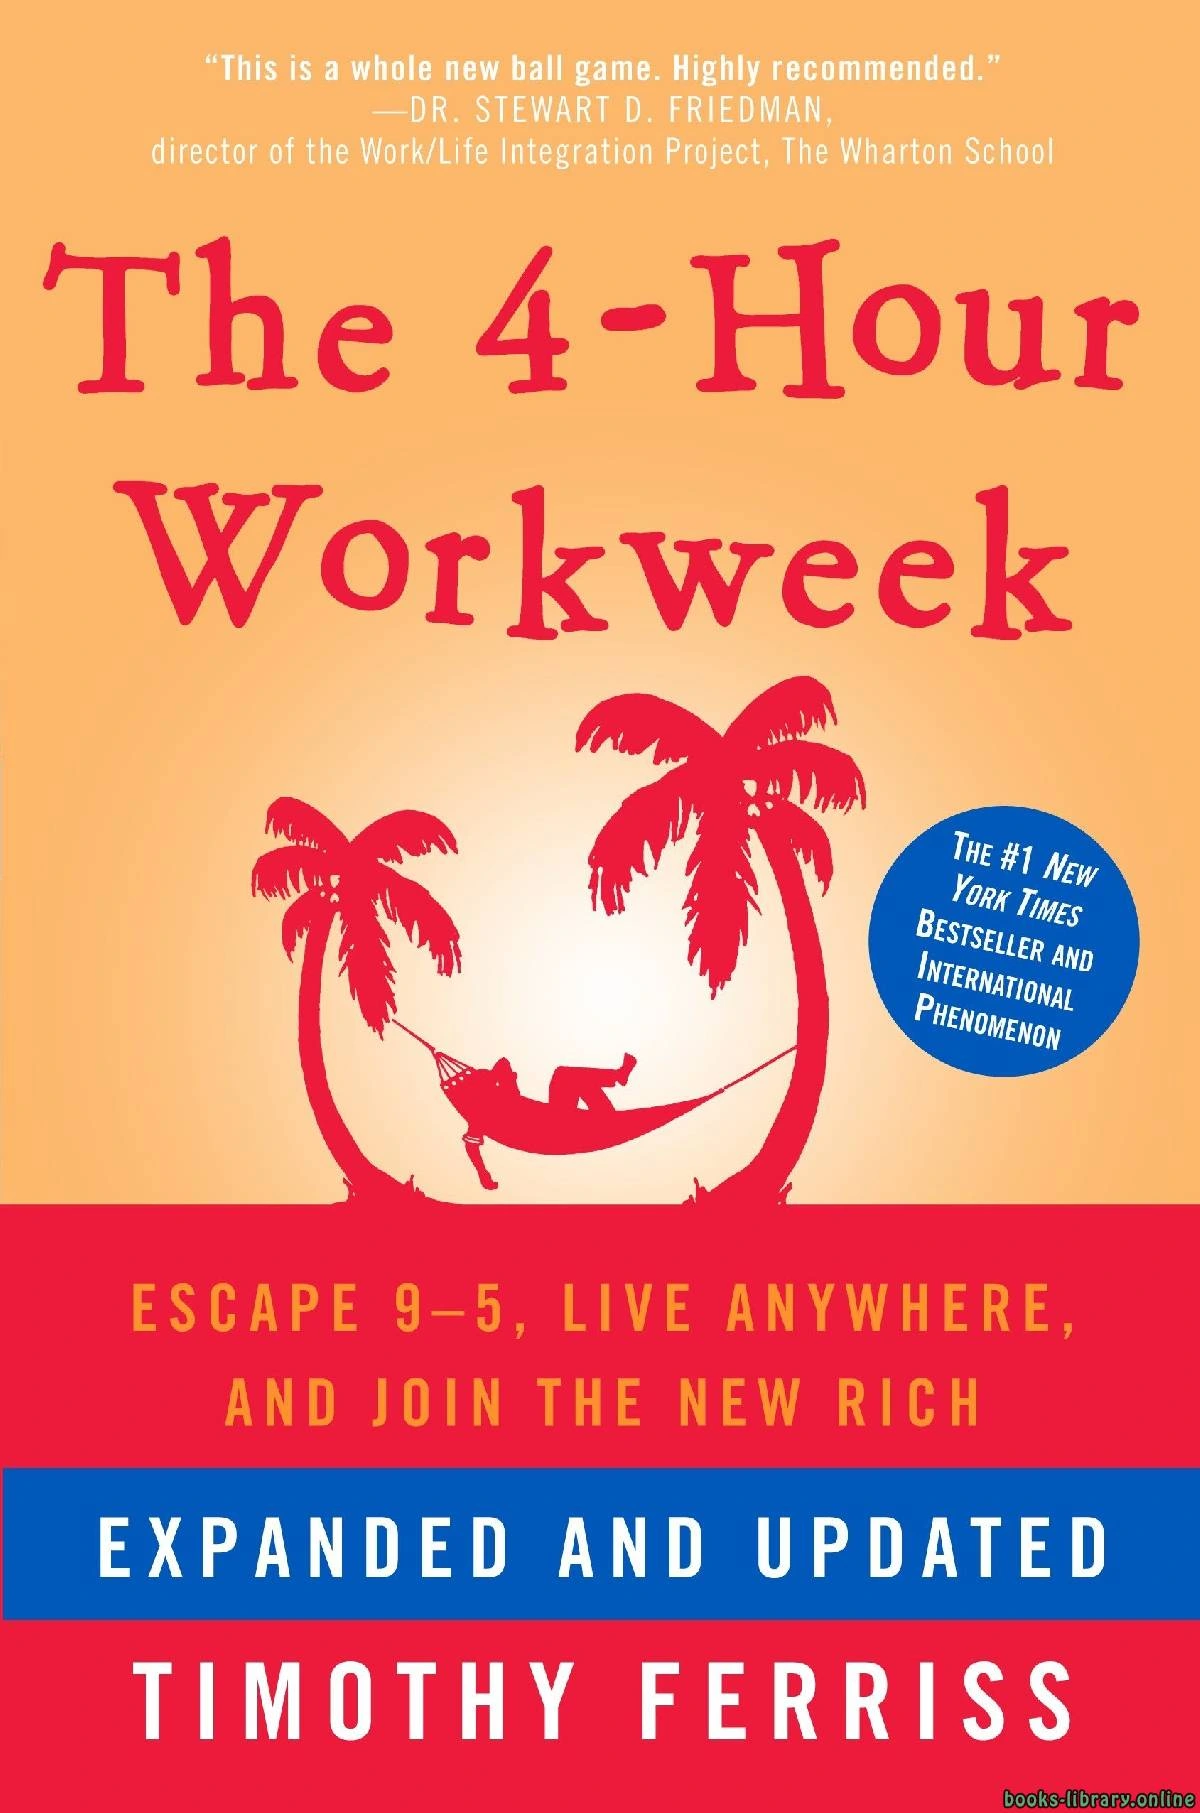 كتاب أعمل 4 ساعات فقط في الأسبوع pdf